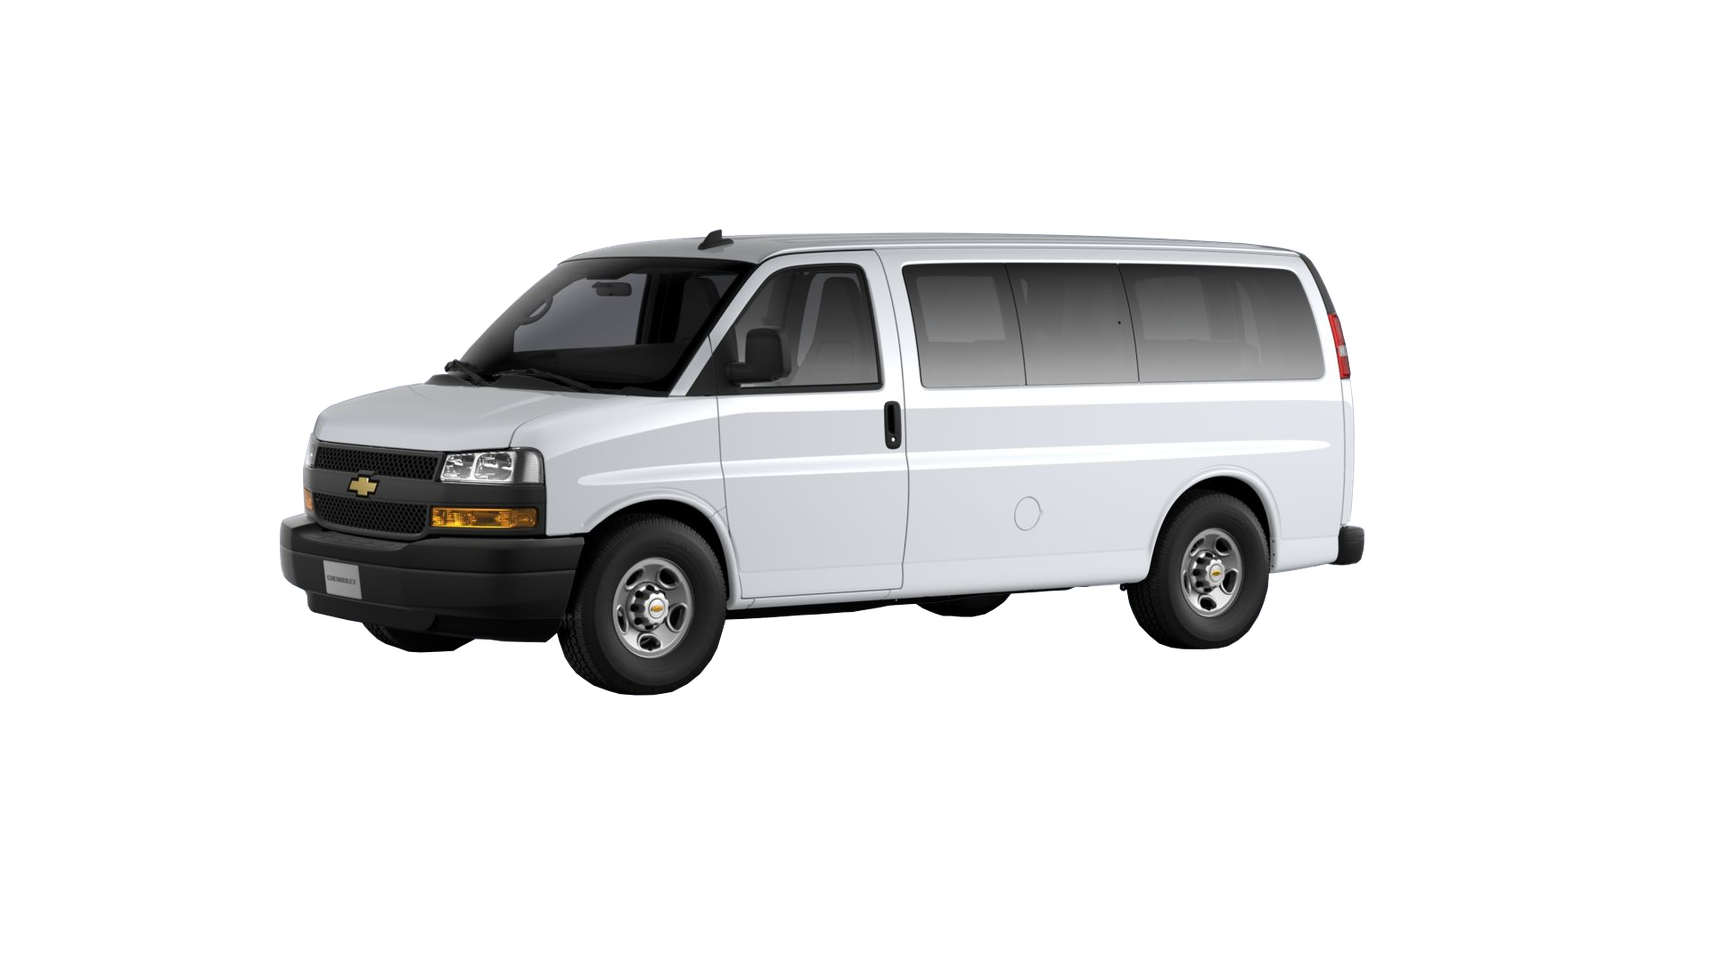 Chevrolet Express Passenger LS 2500 Regular Wheelbase 2020 4.3 V6 VVT Бензин 8 ст. АКПП Задний  